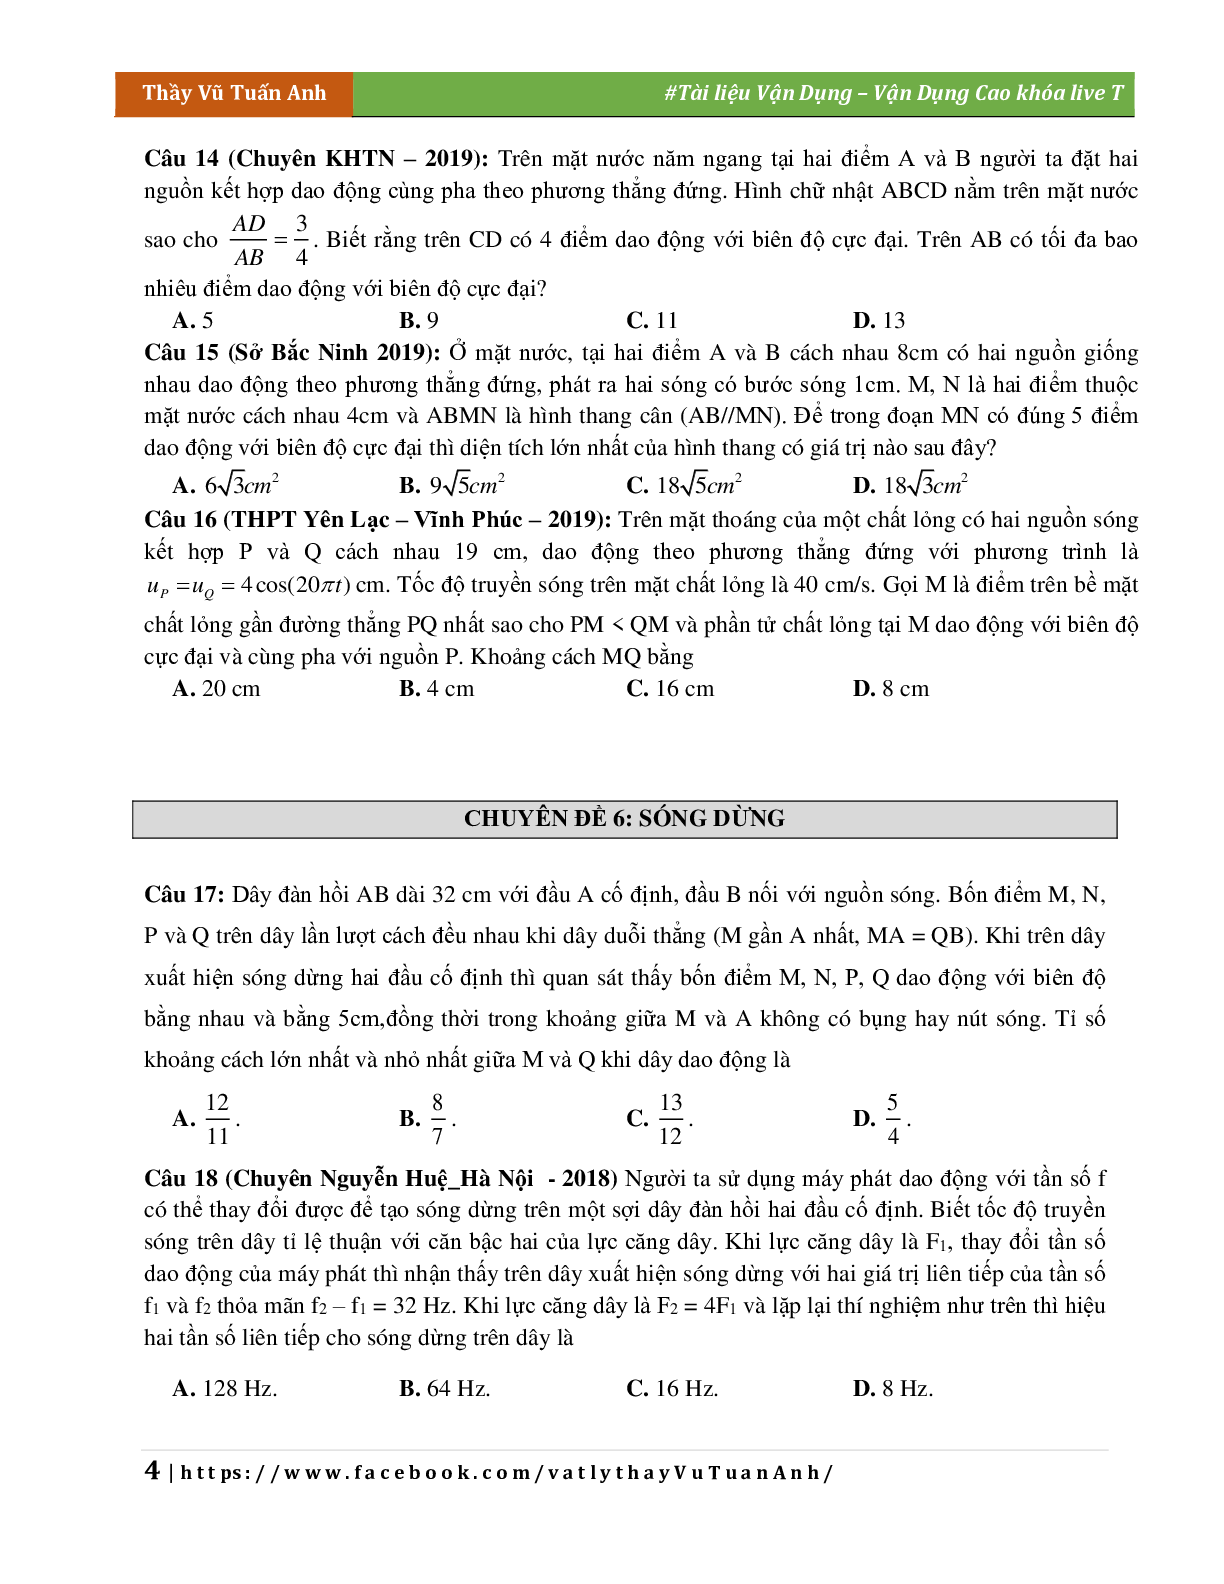 Đề Vận Dụng Cao Chương Sóng Cơ Môn Vật Lý Lớp 12 (trang 4)